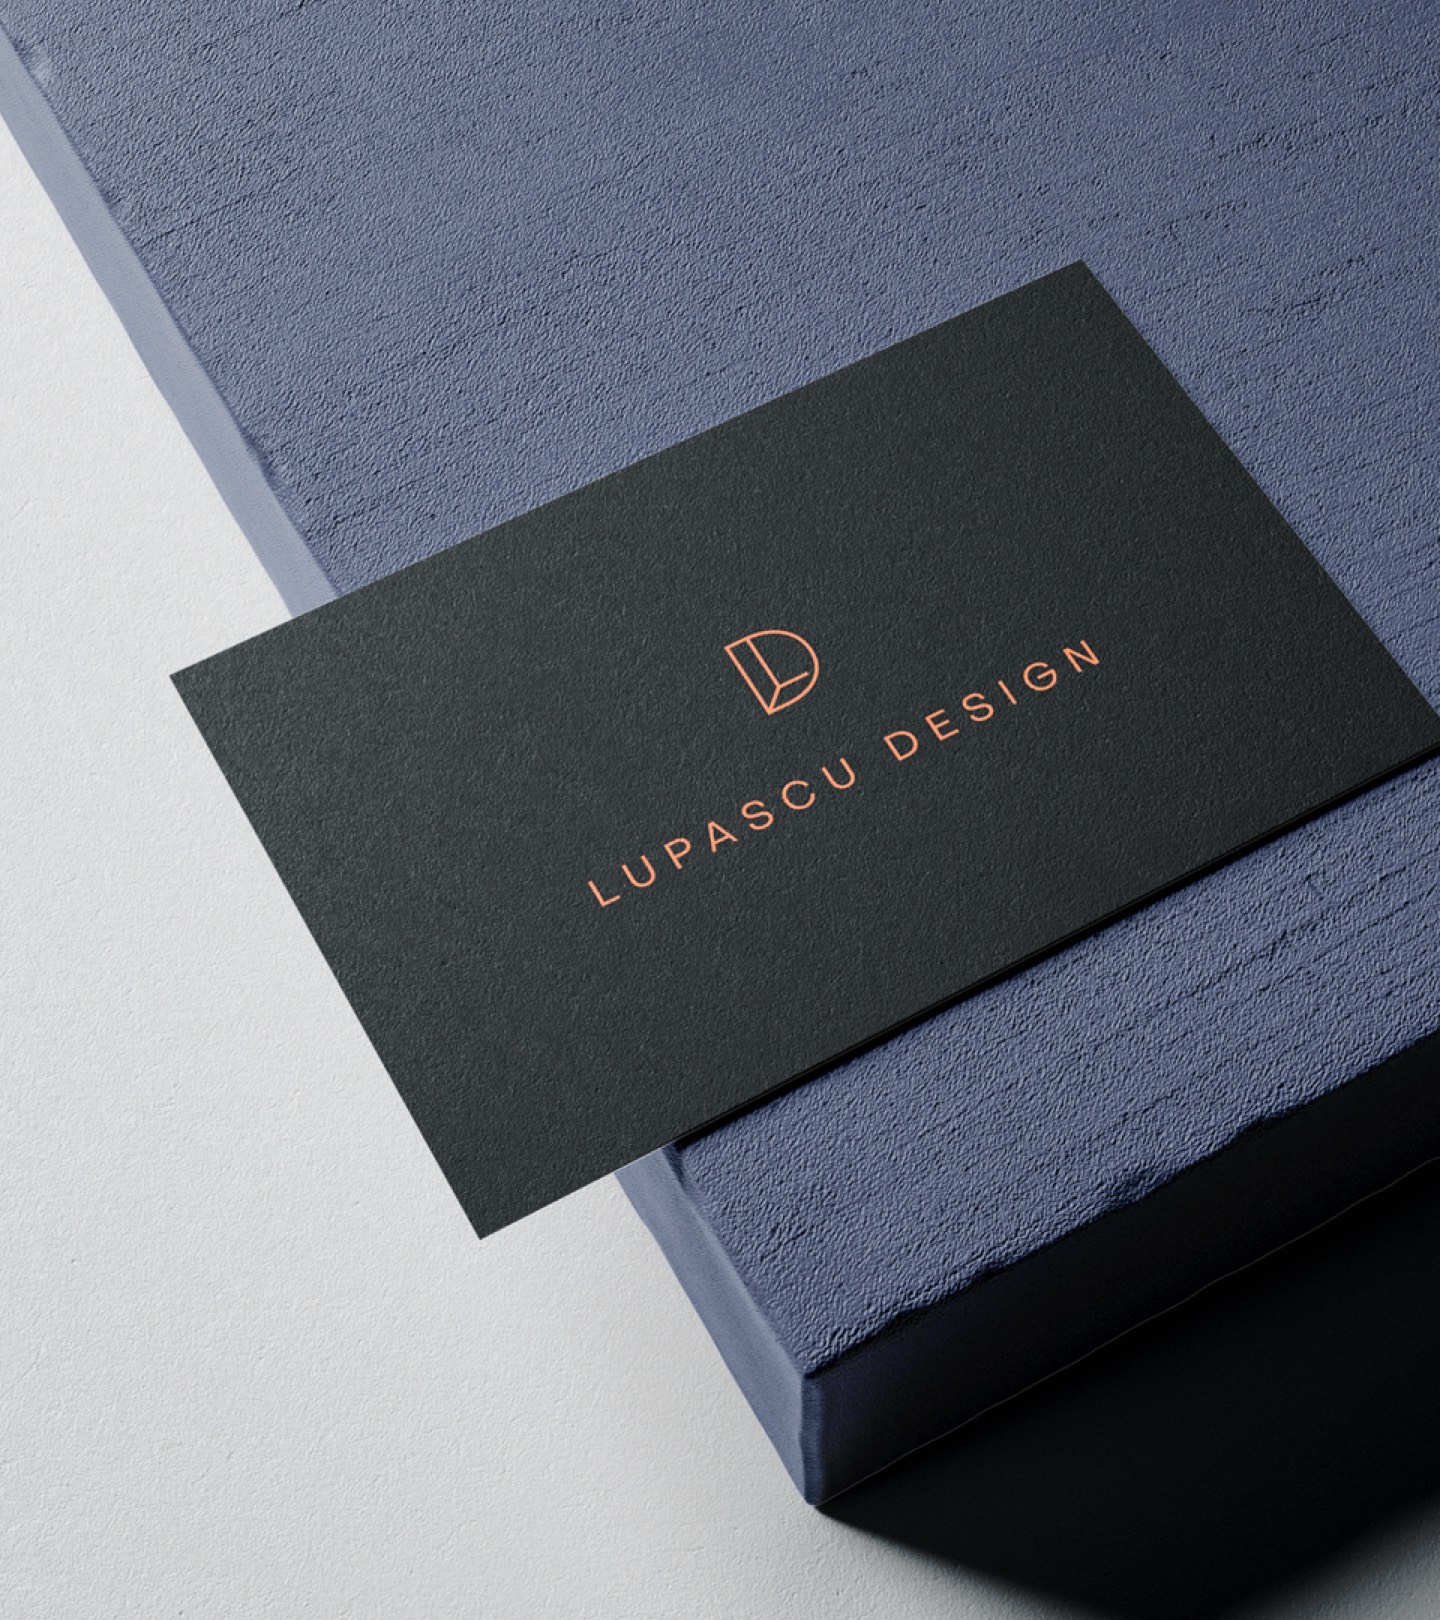 Lupascu Design | Studio de design interior